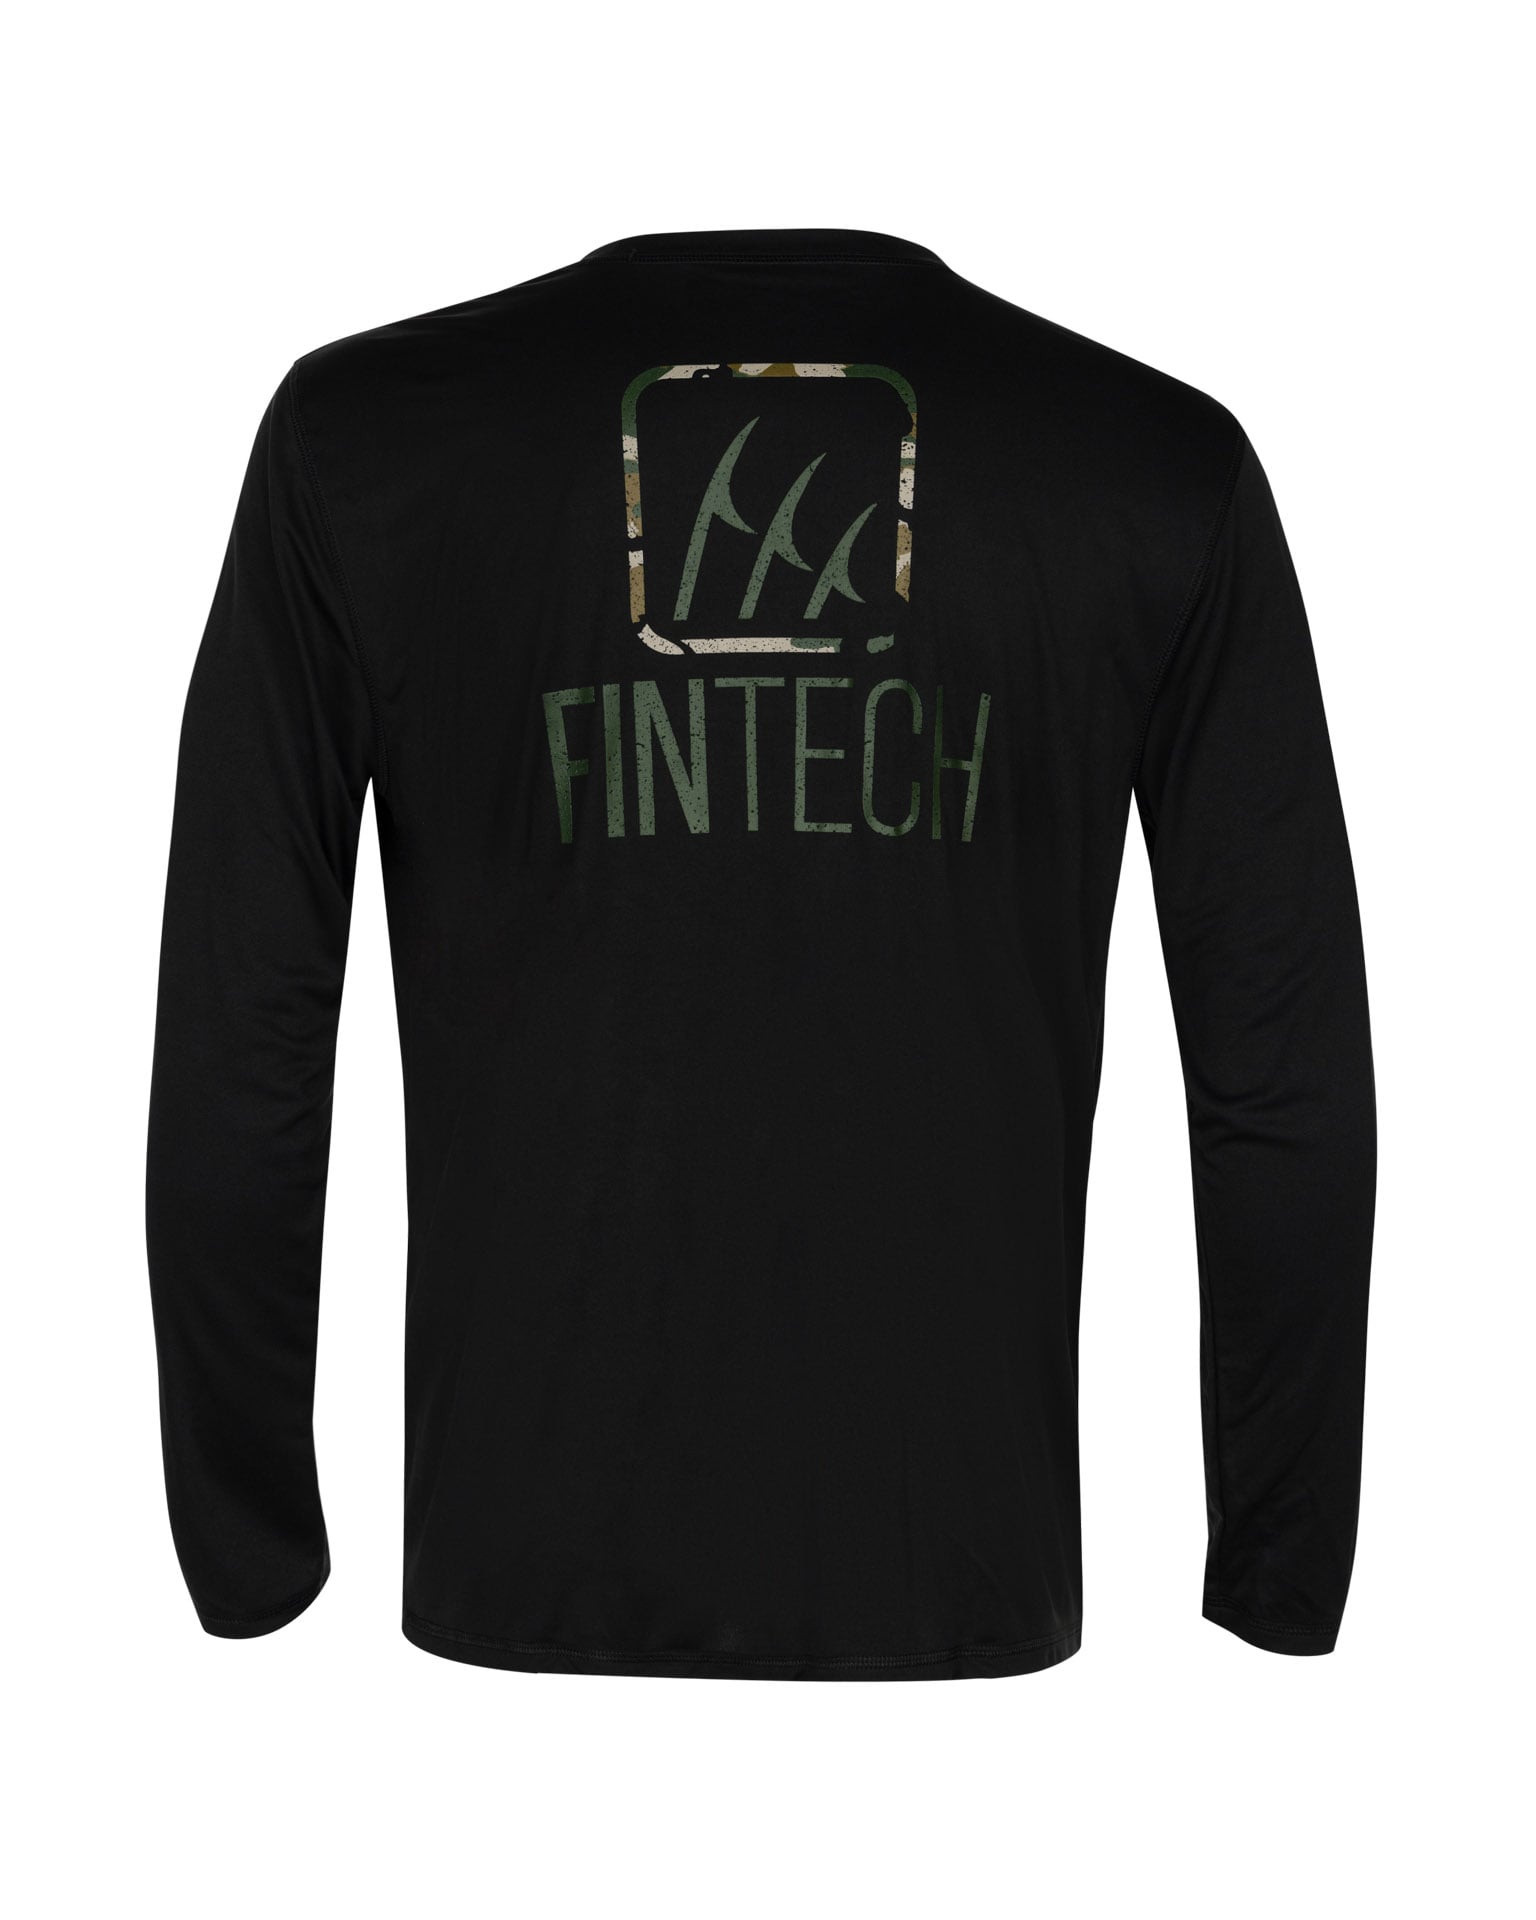 FINTECH Men's Long Sleeve Graphic T-shirt (Medium) in the Tops